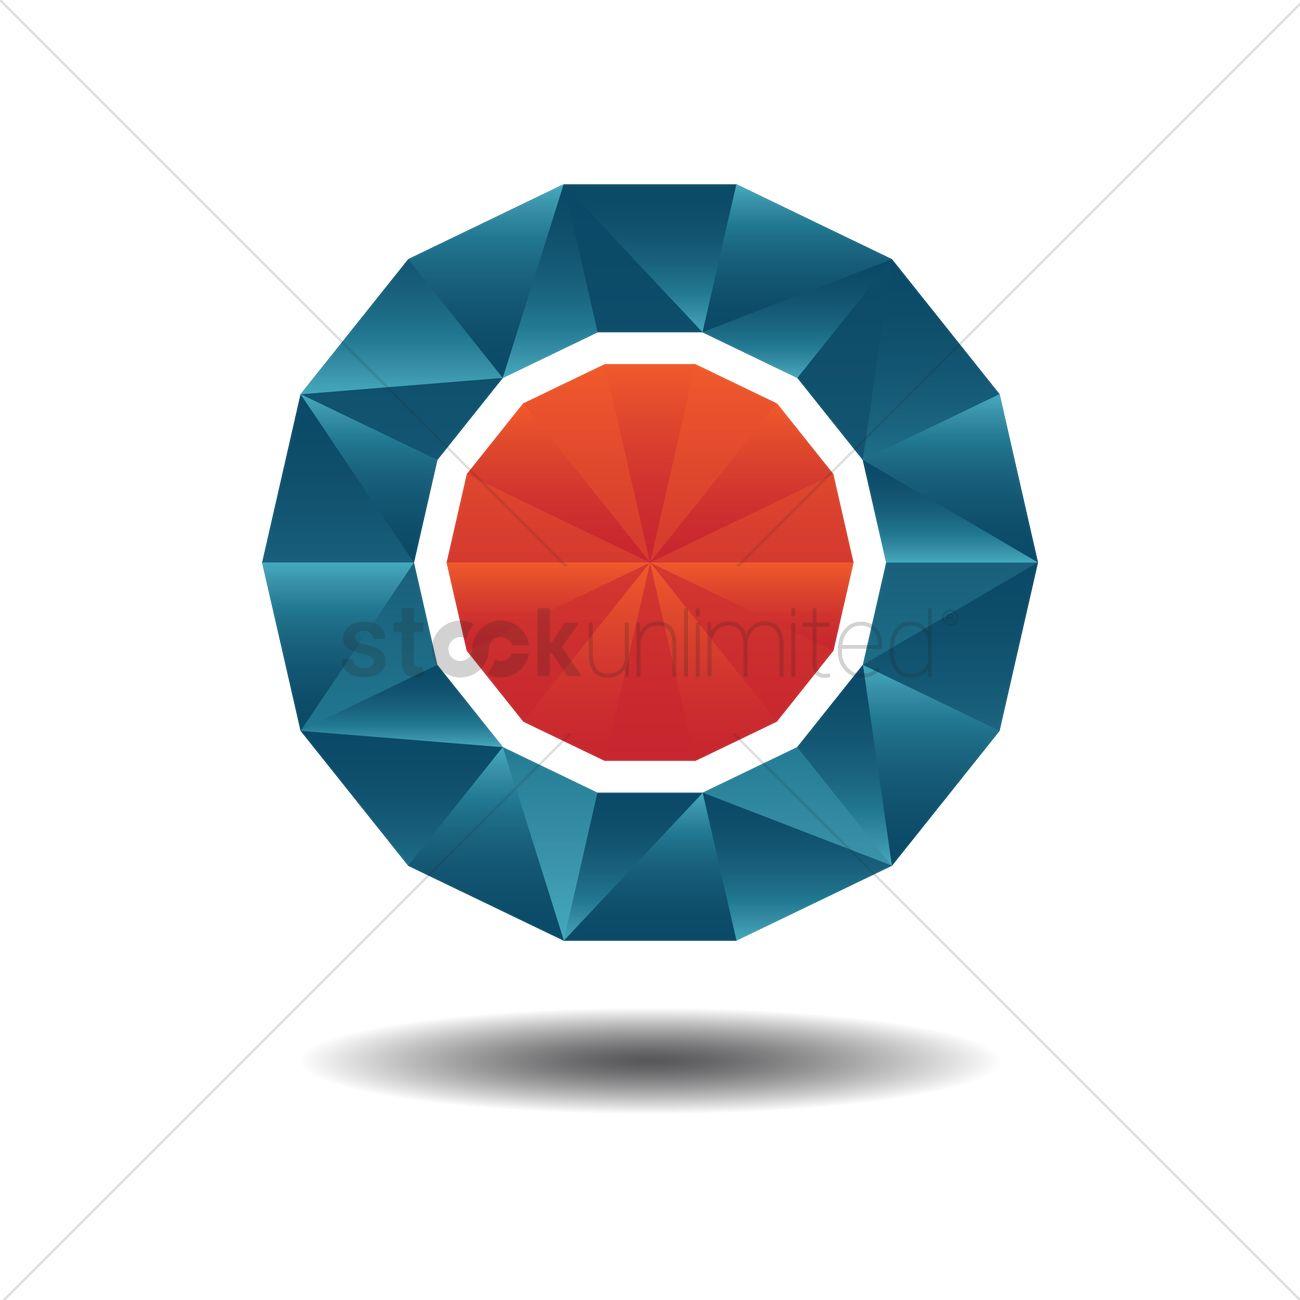 Round Logo - Round logo element Vector Image